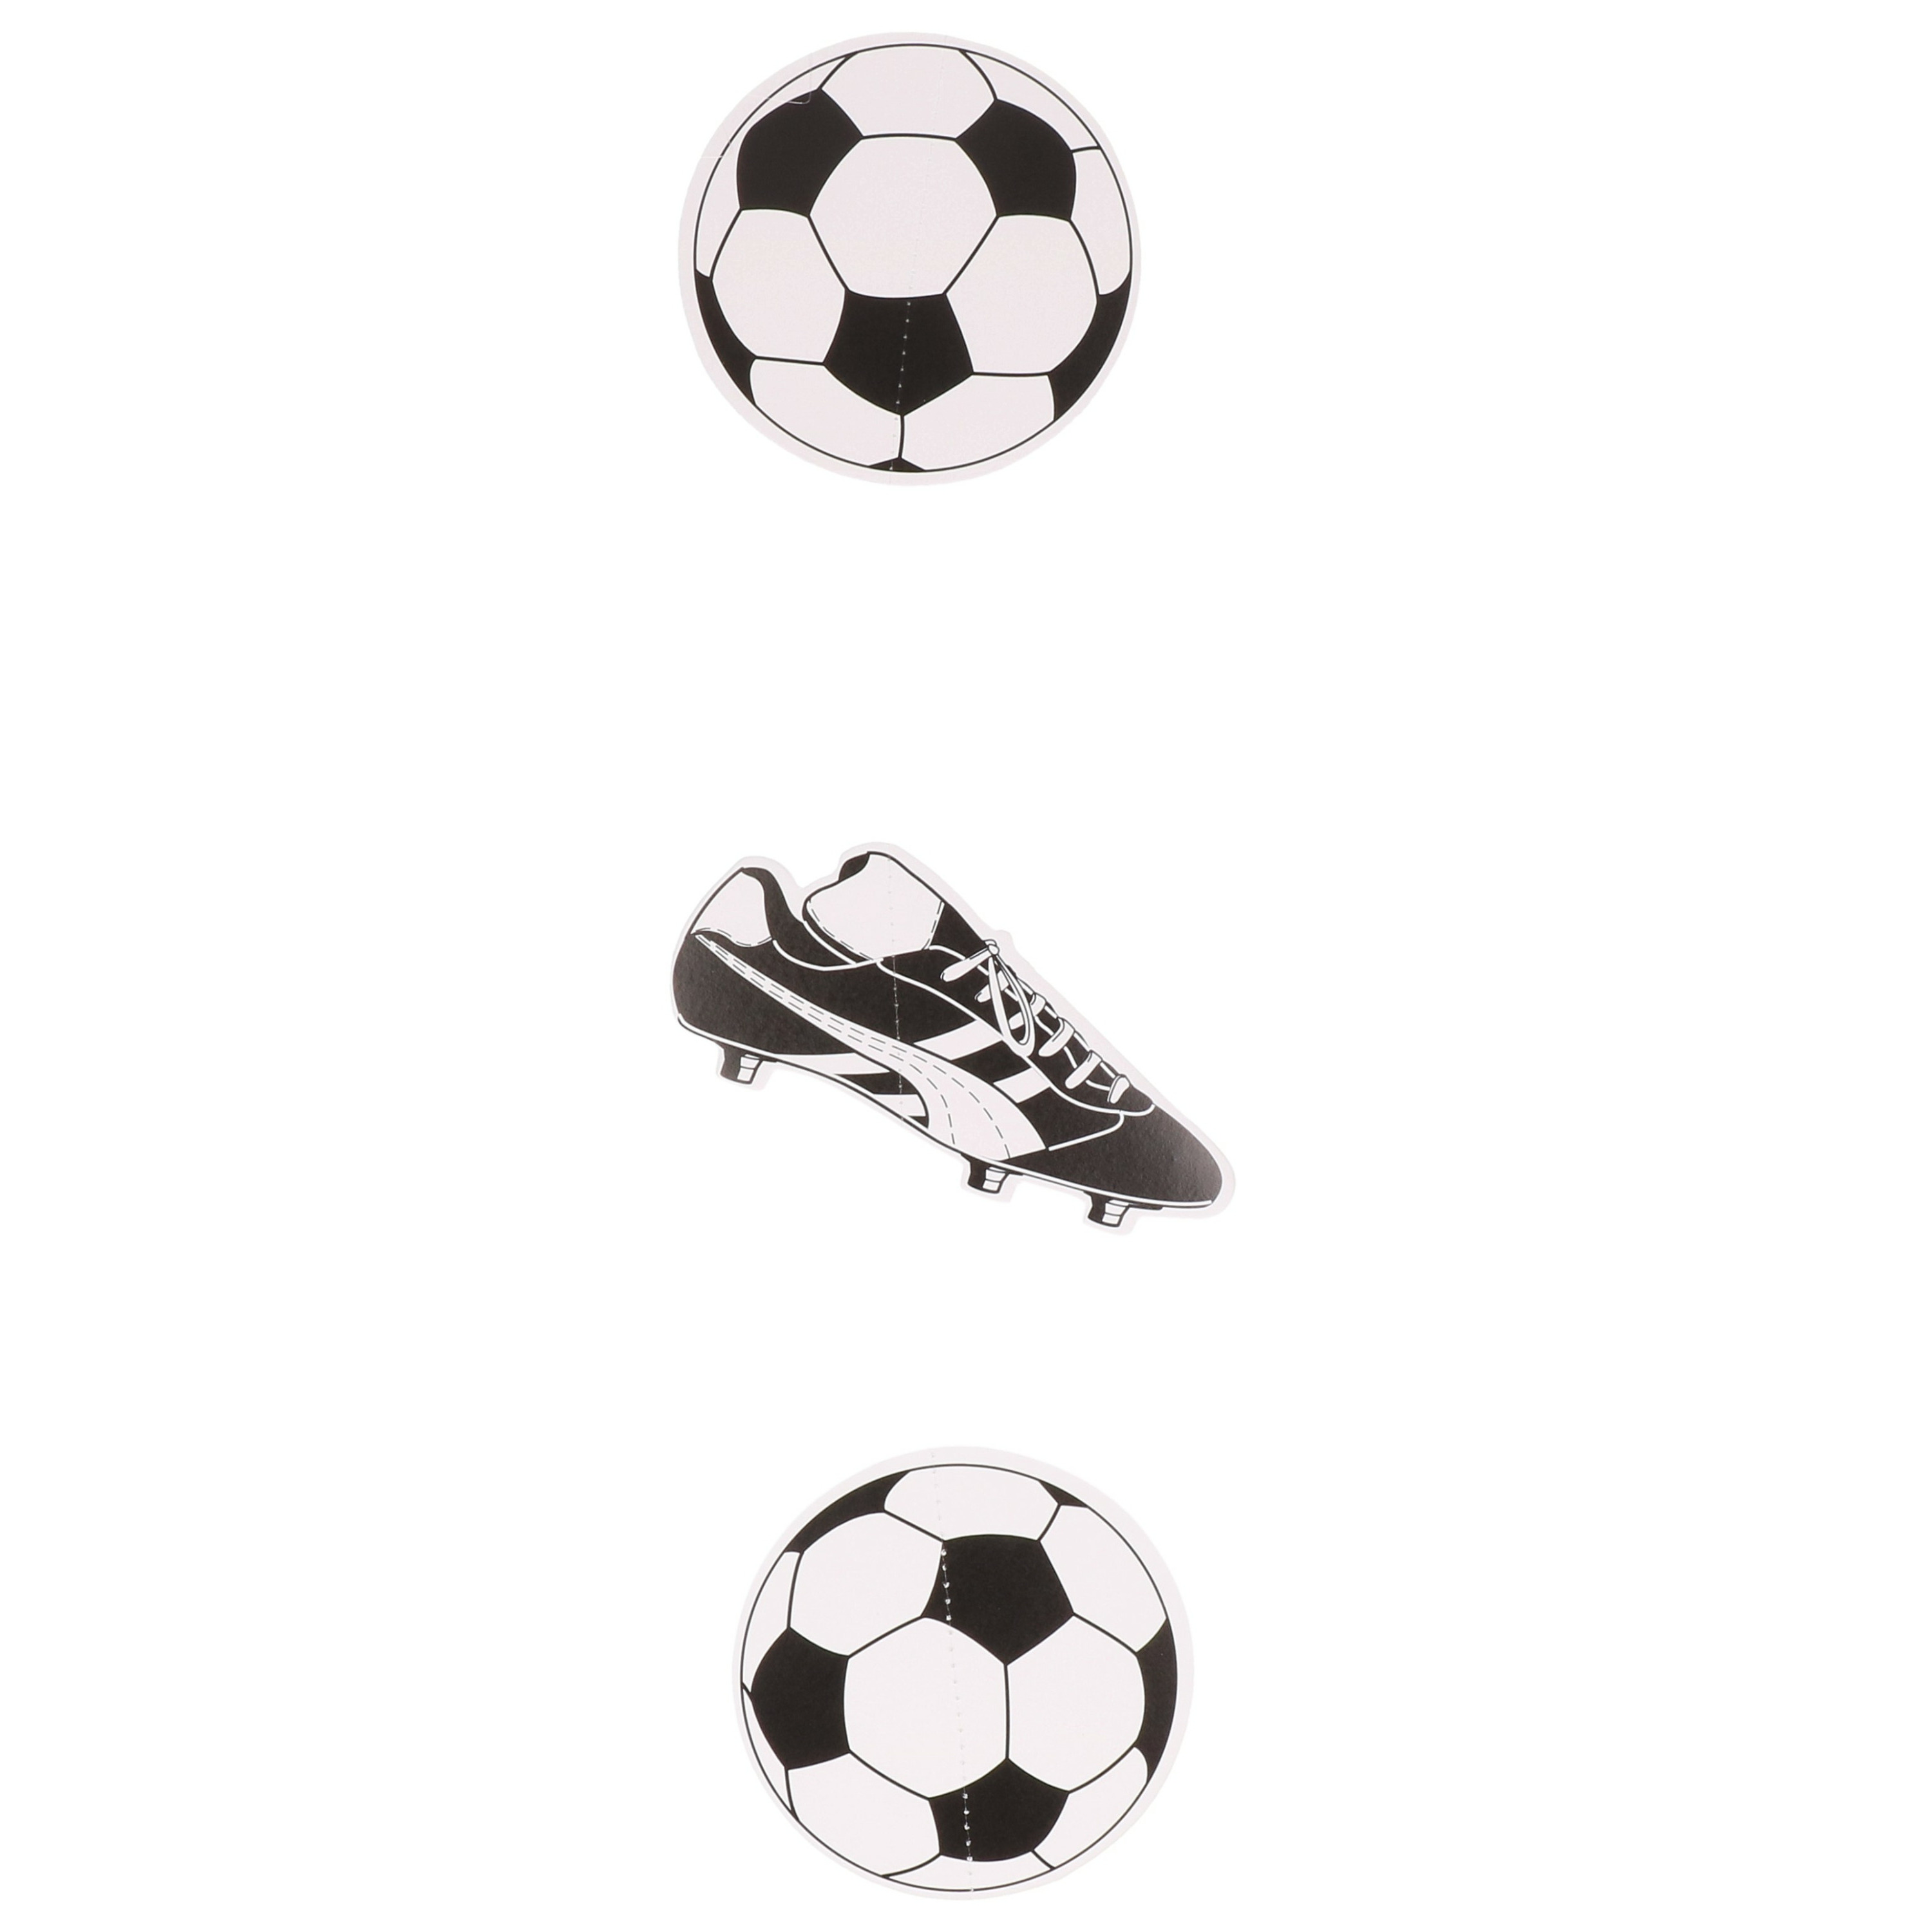 Voetbal slinger zwart/wit - EK/WK versiering